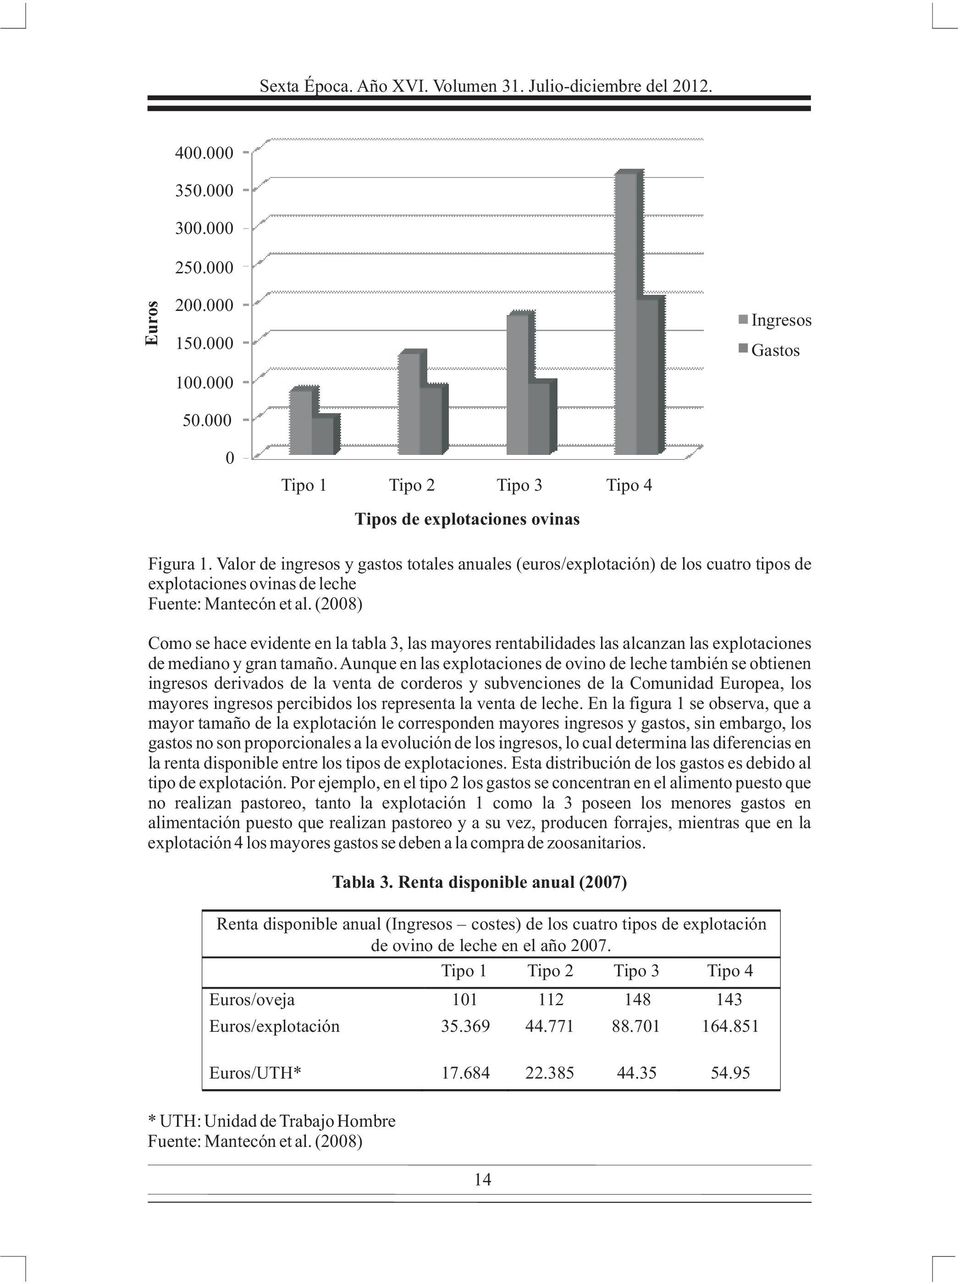 Valor de ingresos y gastos totales anuales (euros/explotación) de los cuatro tipos de explotaciones ovinas de leche Fuente: Mantecón et al.